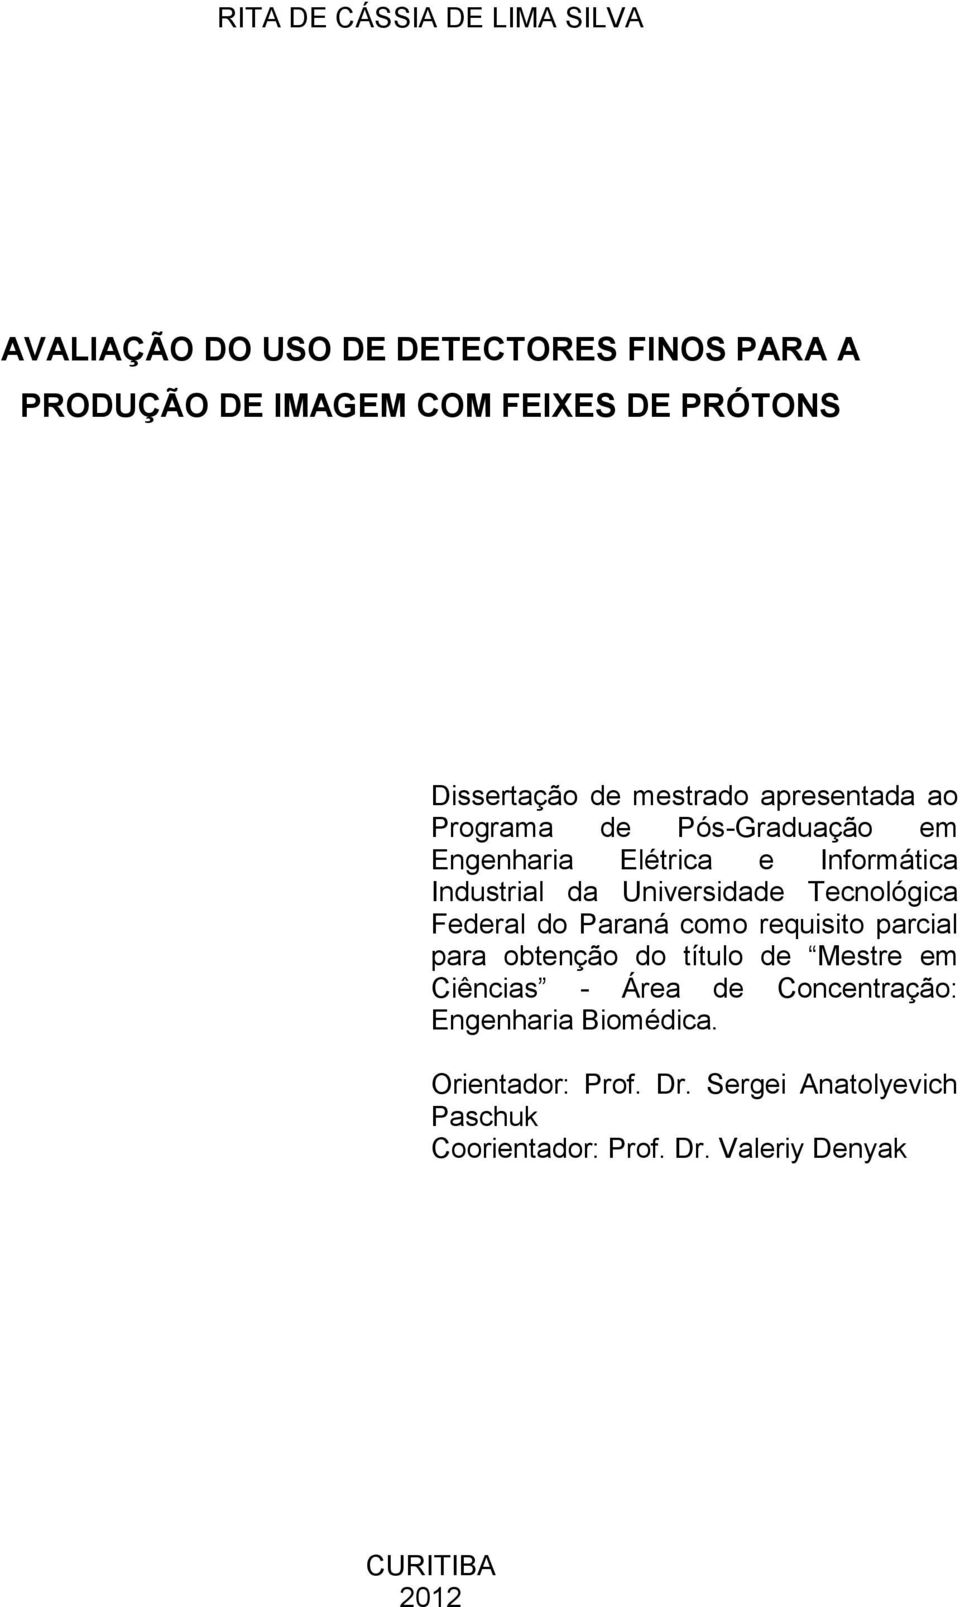 Universidade Tecnológica Federal do Paraná como requisito parcial para obtenção do título de Mestre em Ciências - Área de